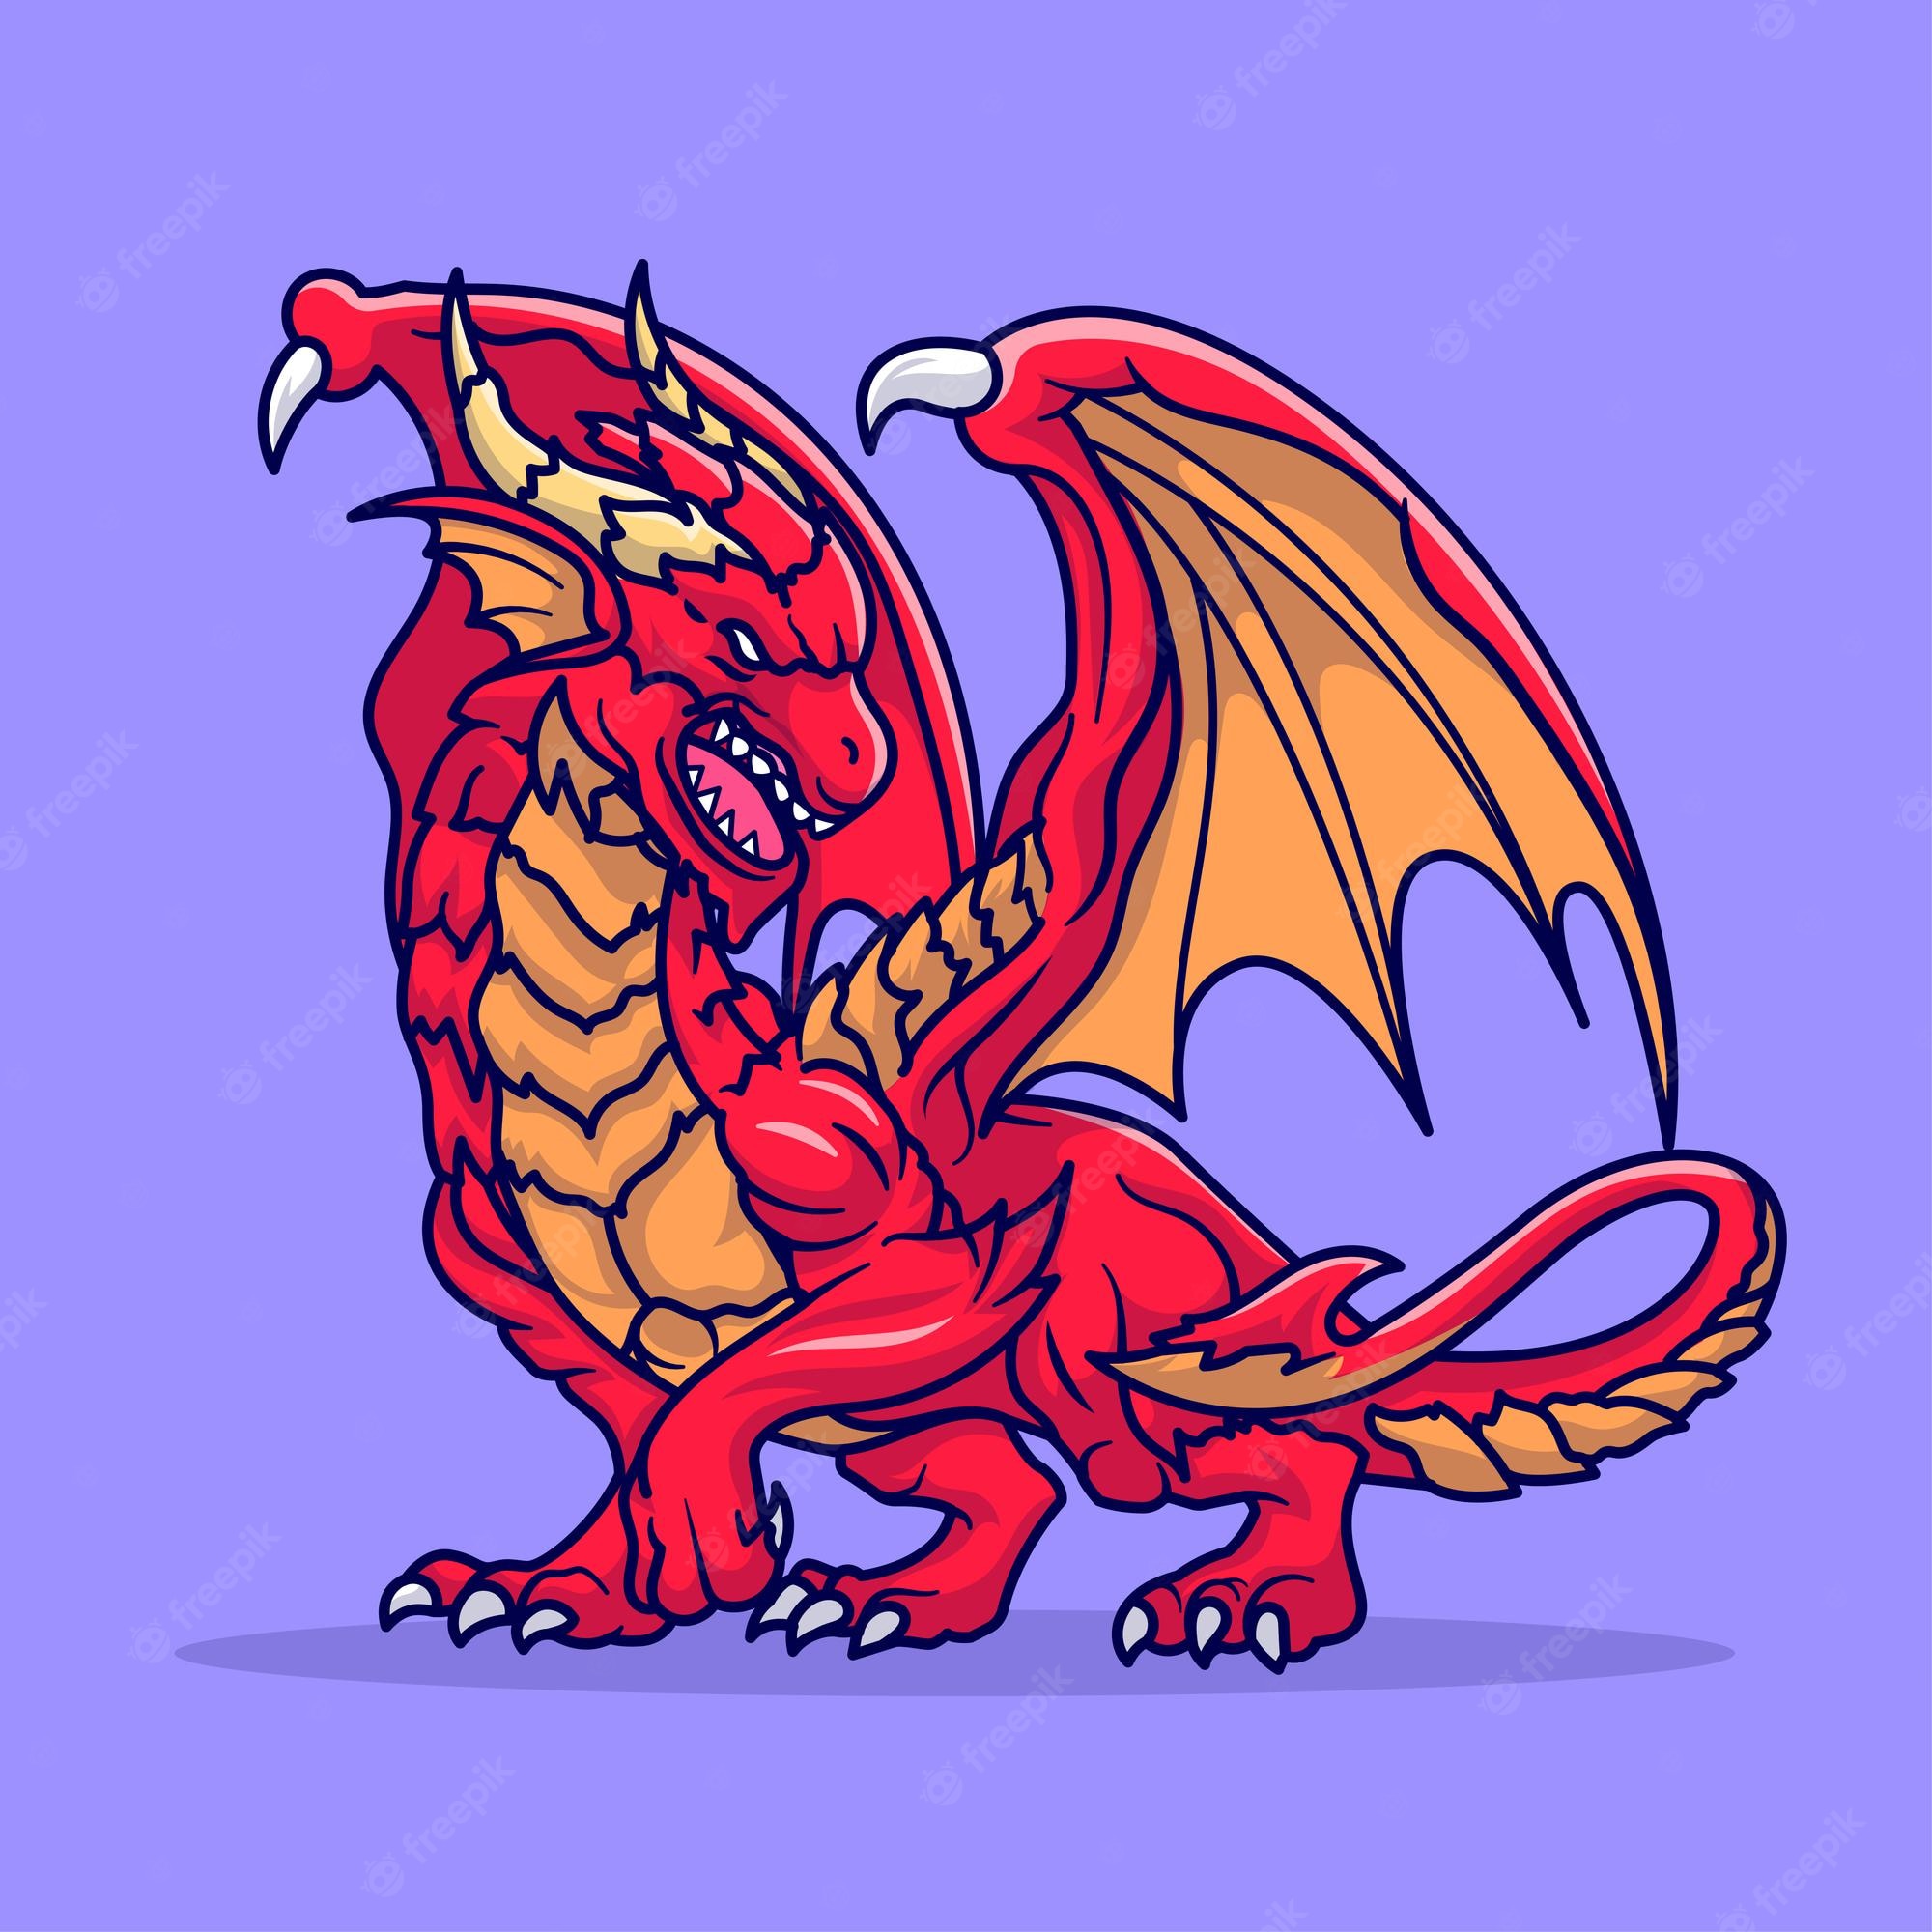 Cute cartoon dragon Image. Free Vectors, & PSD